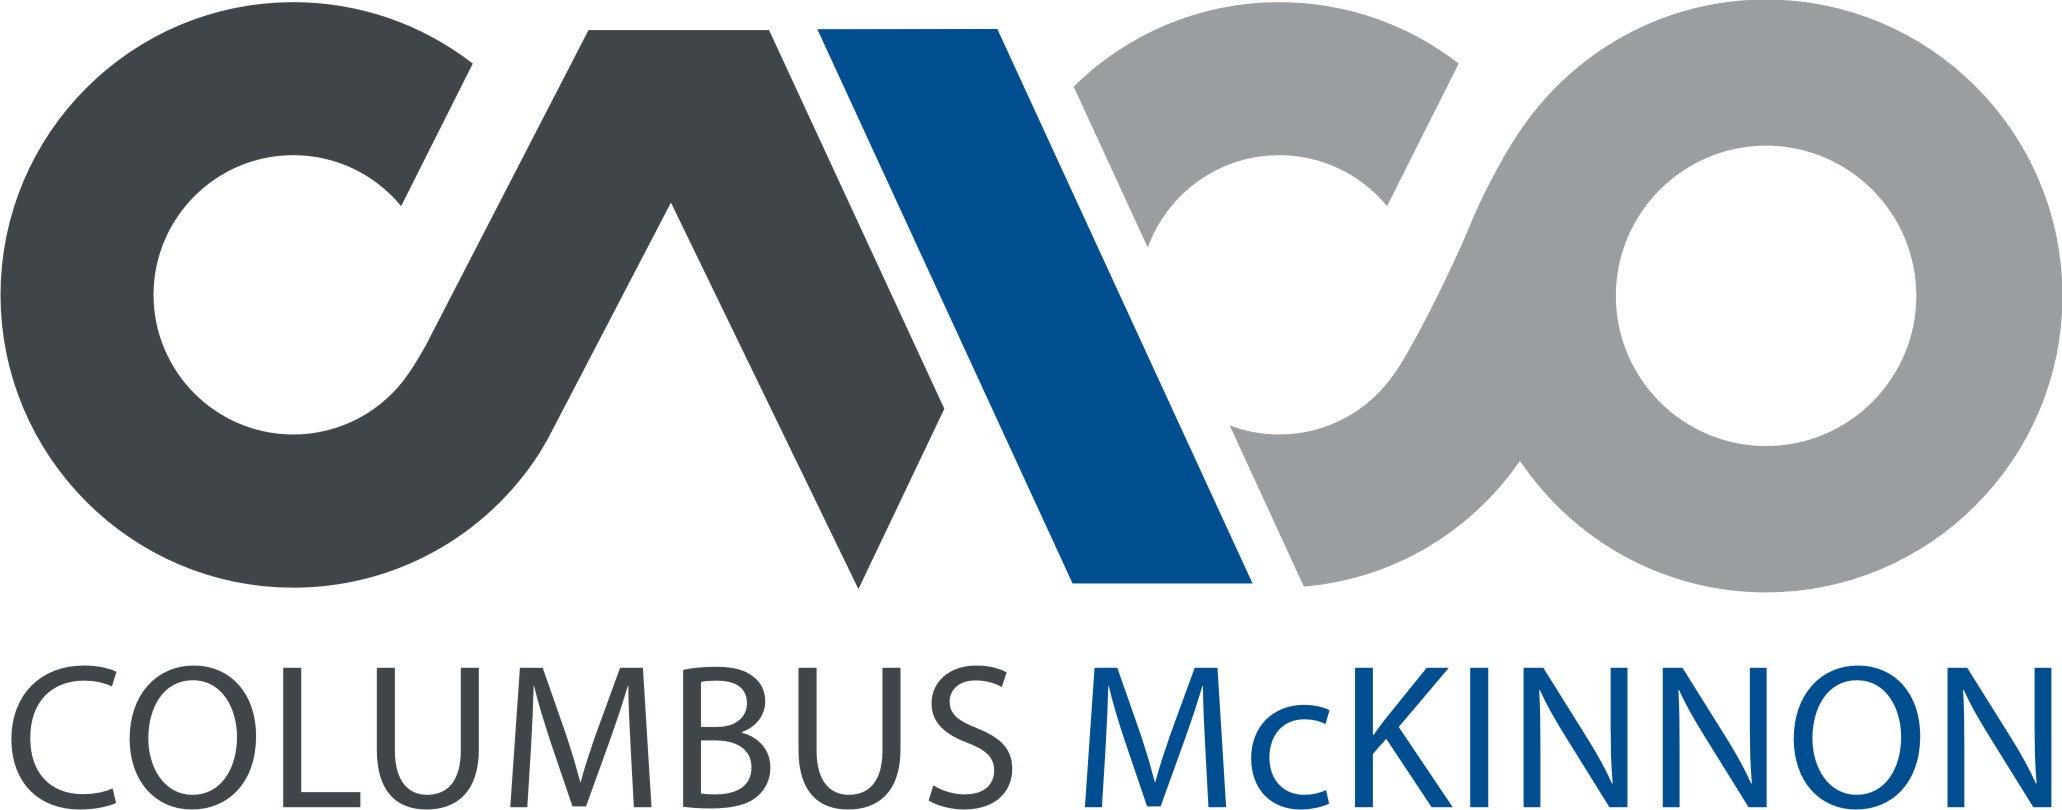 columbus-mckinnon-logo[1]